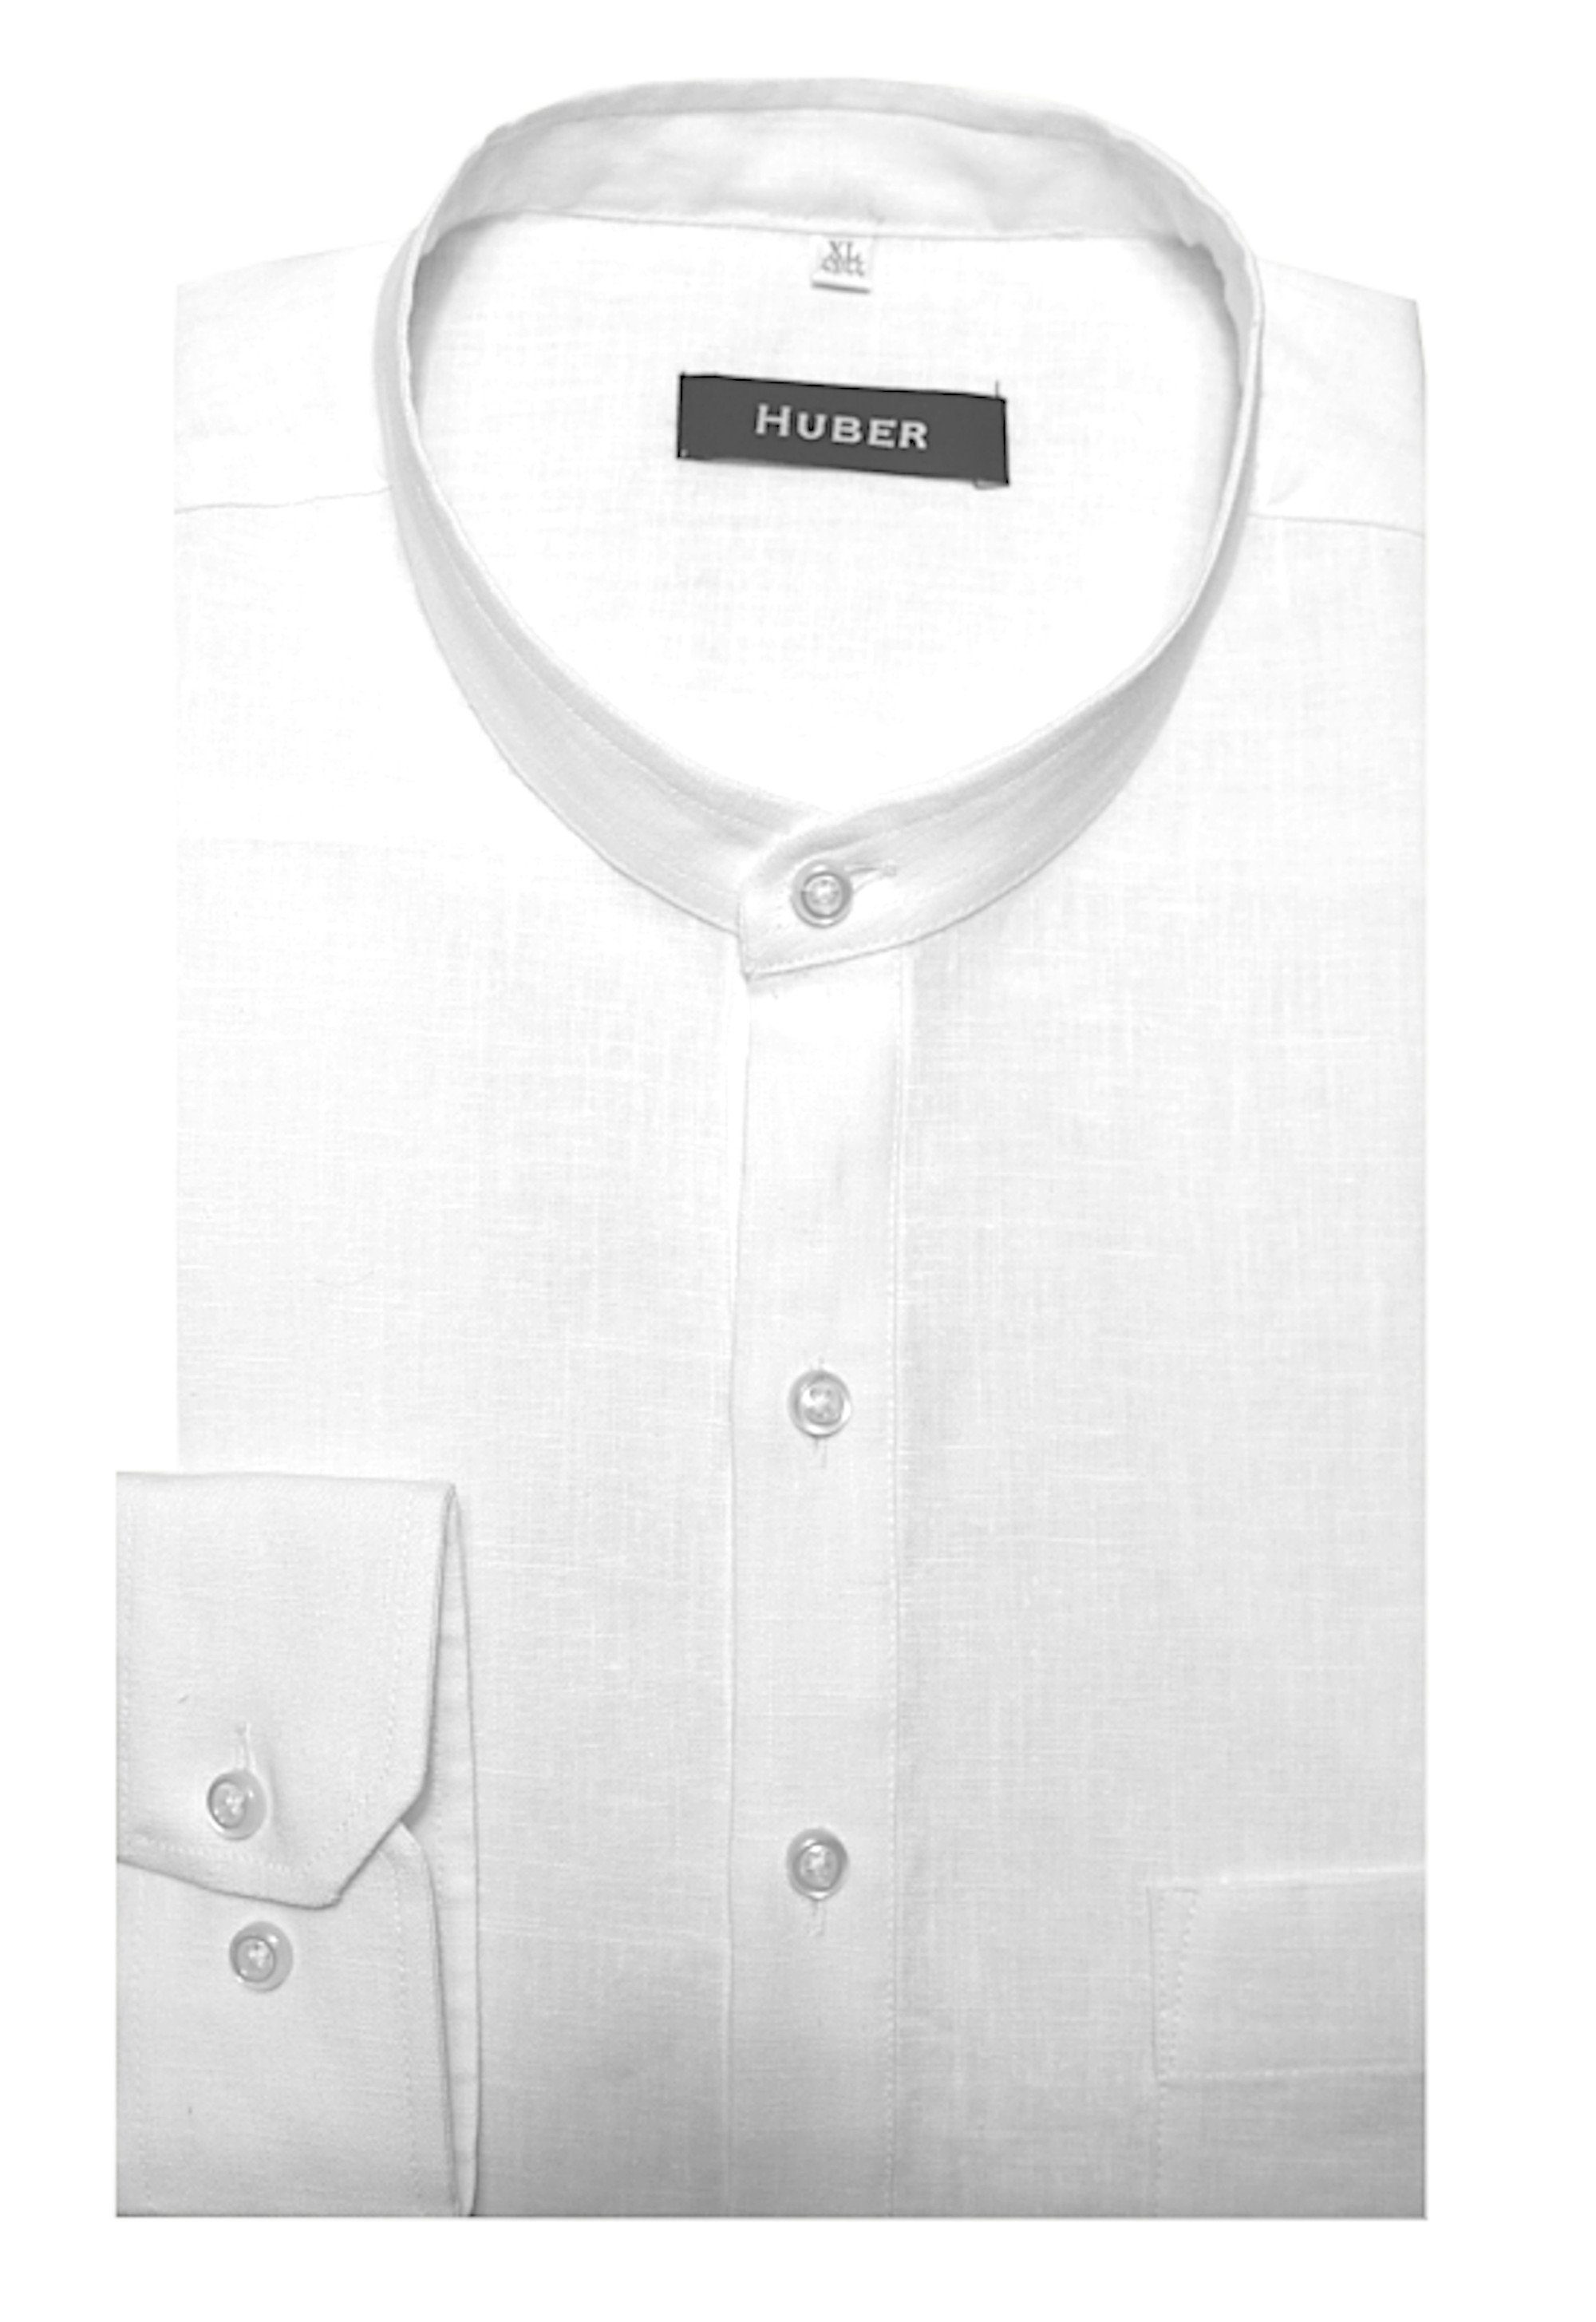 Huber Hemden Leinenhemd HU-0501 Schlupfhemd mit Stehkragen, 100% Leinen Regular Made in EU weiß | Freizeithemden